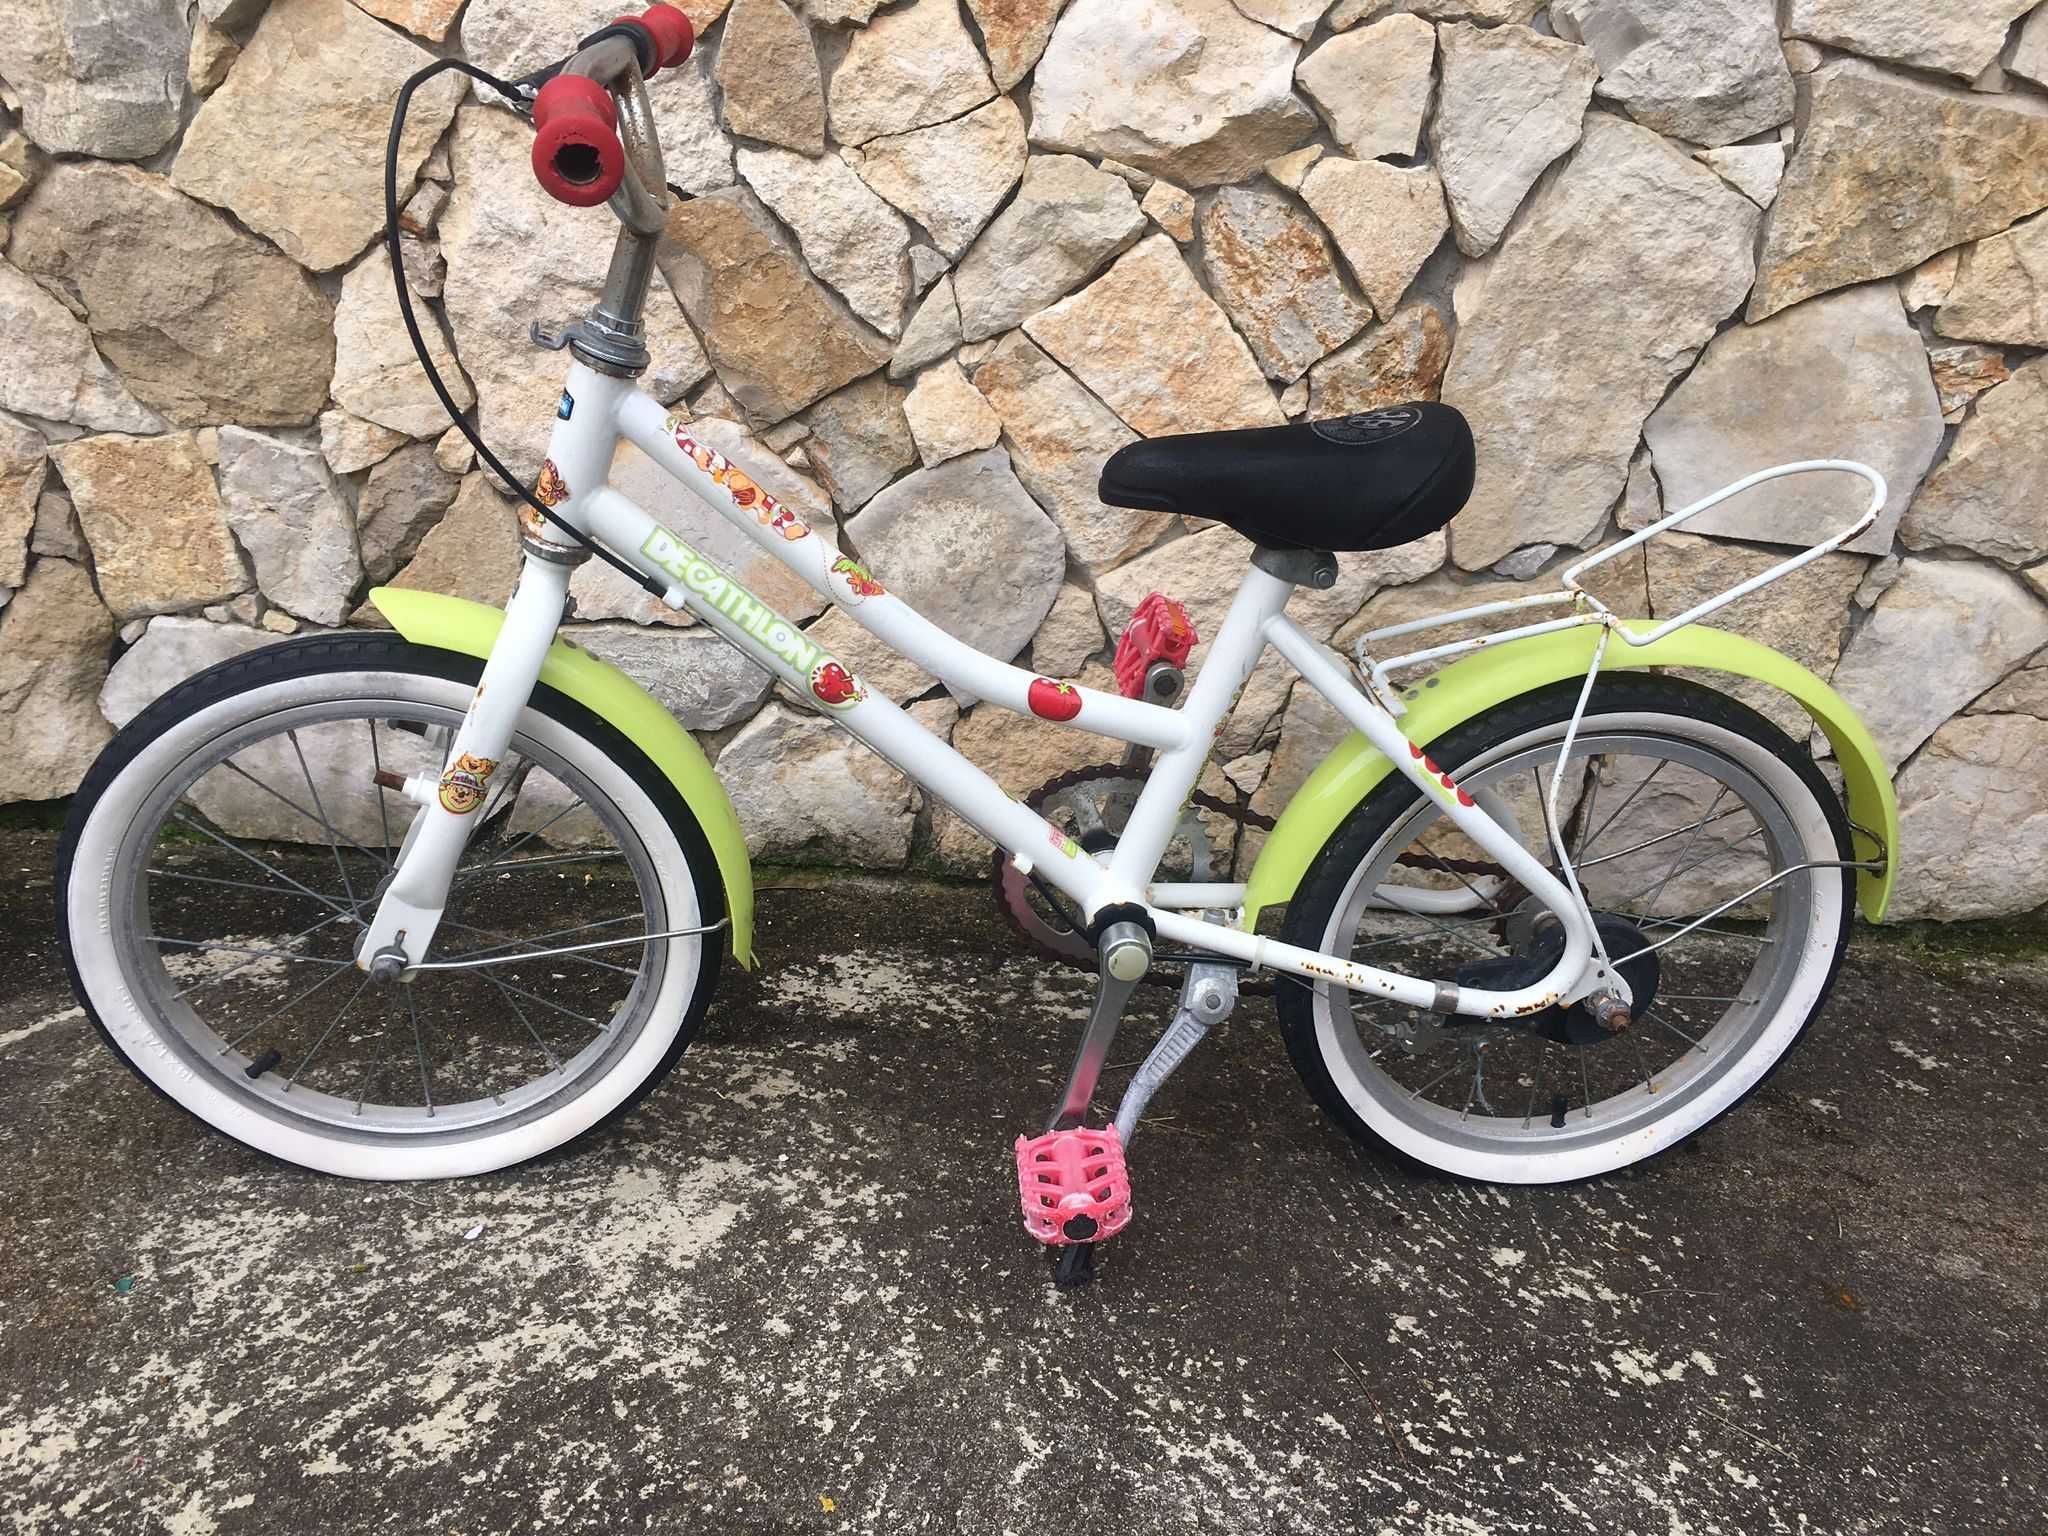 Bicicletas de Criança